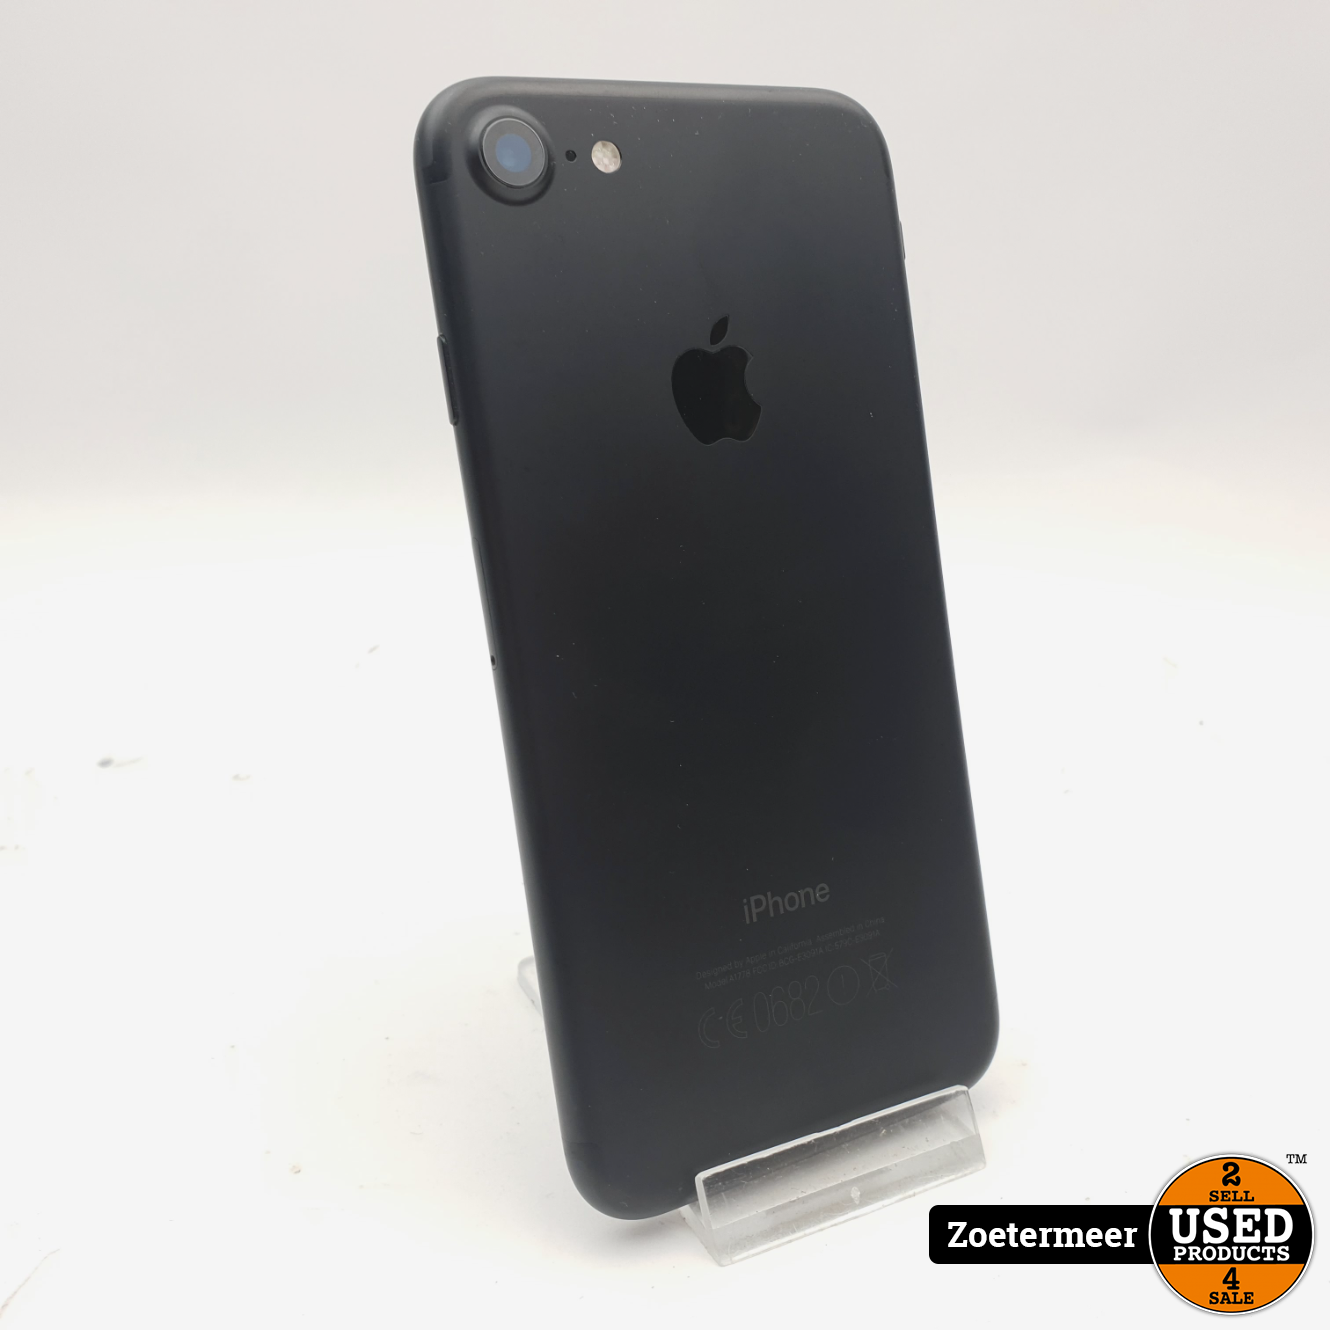 stopverf zebra Aanbevolen Apple iPhone 7 32GB Black - Used Products Zoetermeer